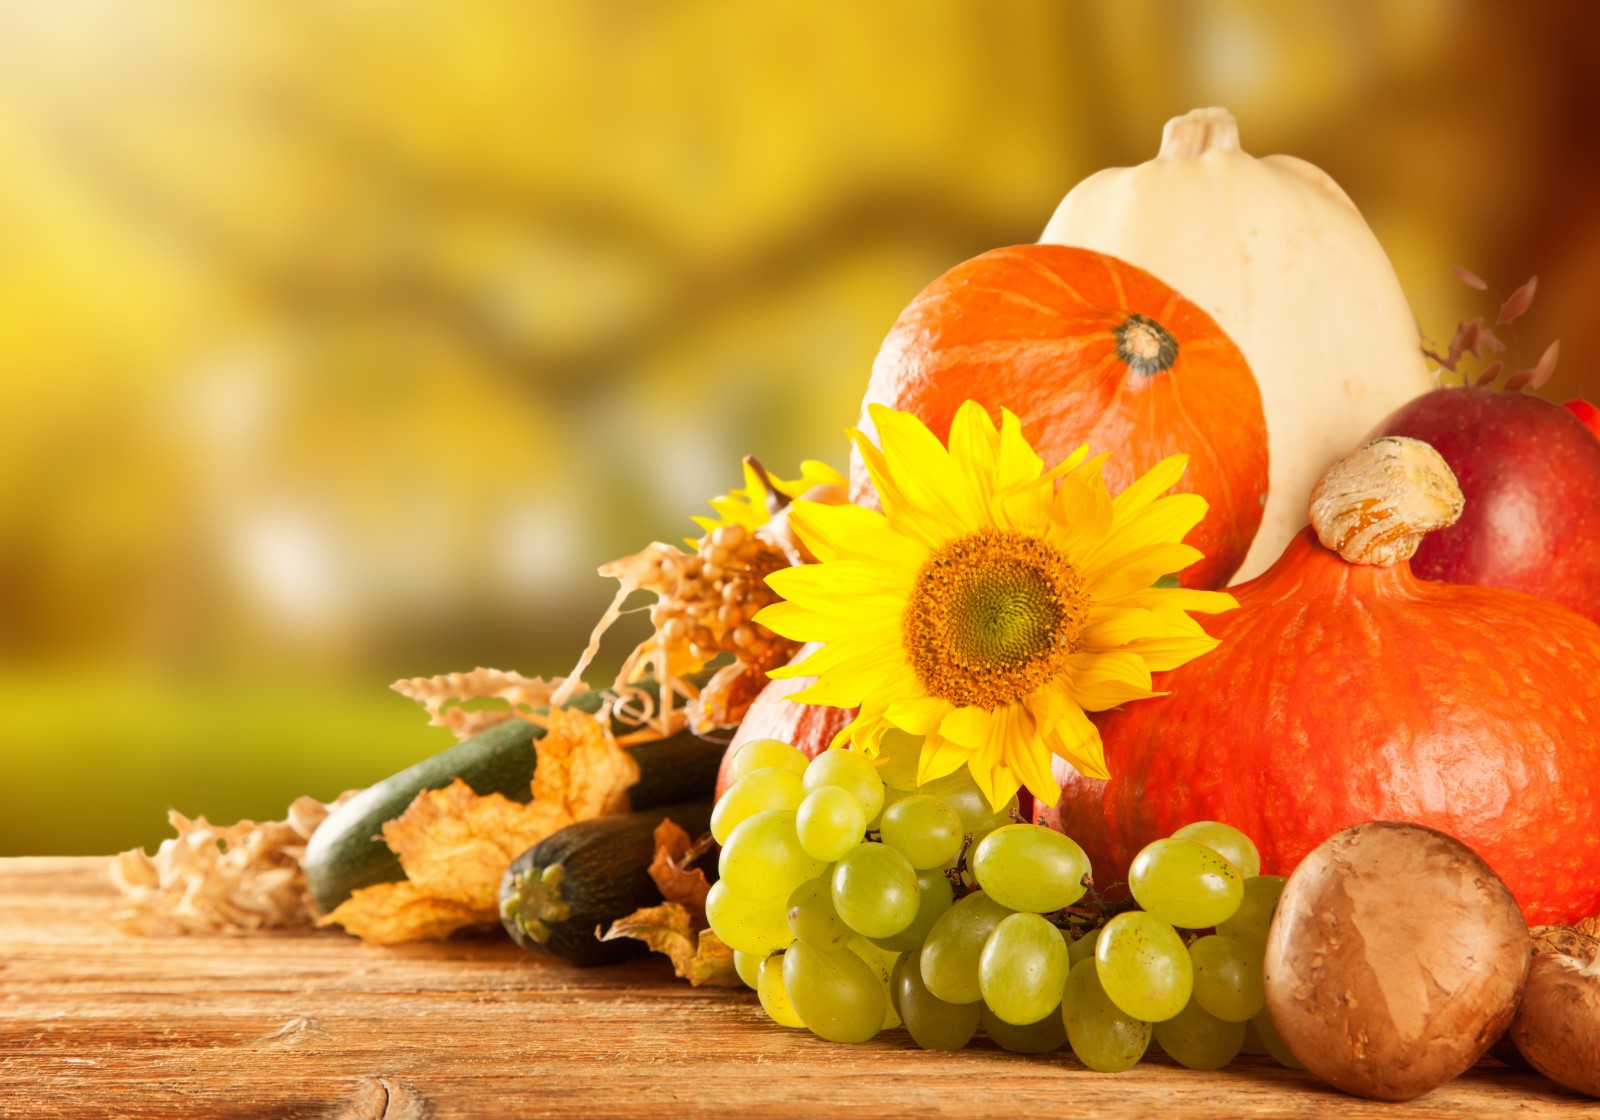 秋季, 蘑菇, 蔬菜, 苹果, 南瓜, 收获, 水果, 葡萄